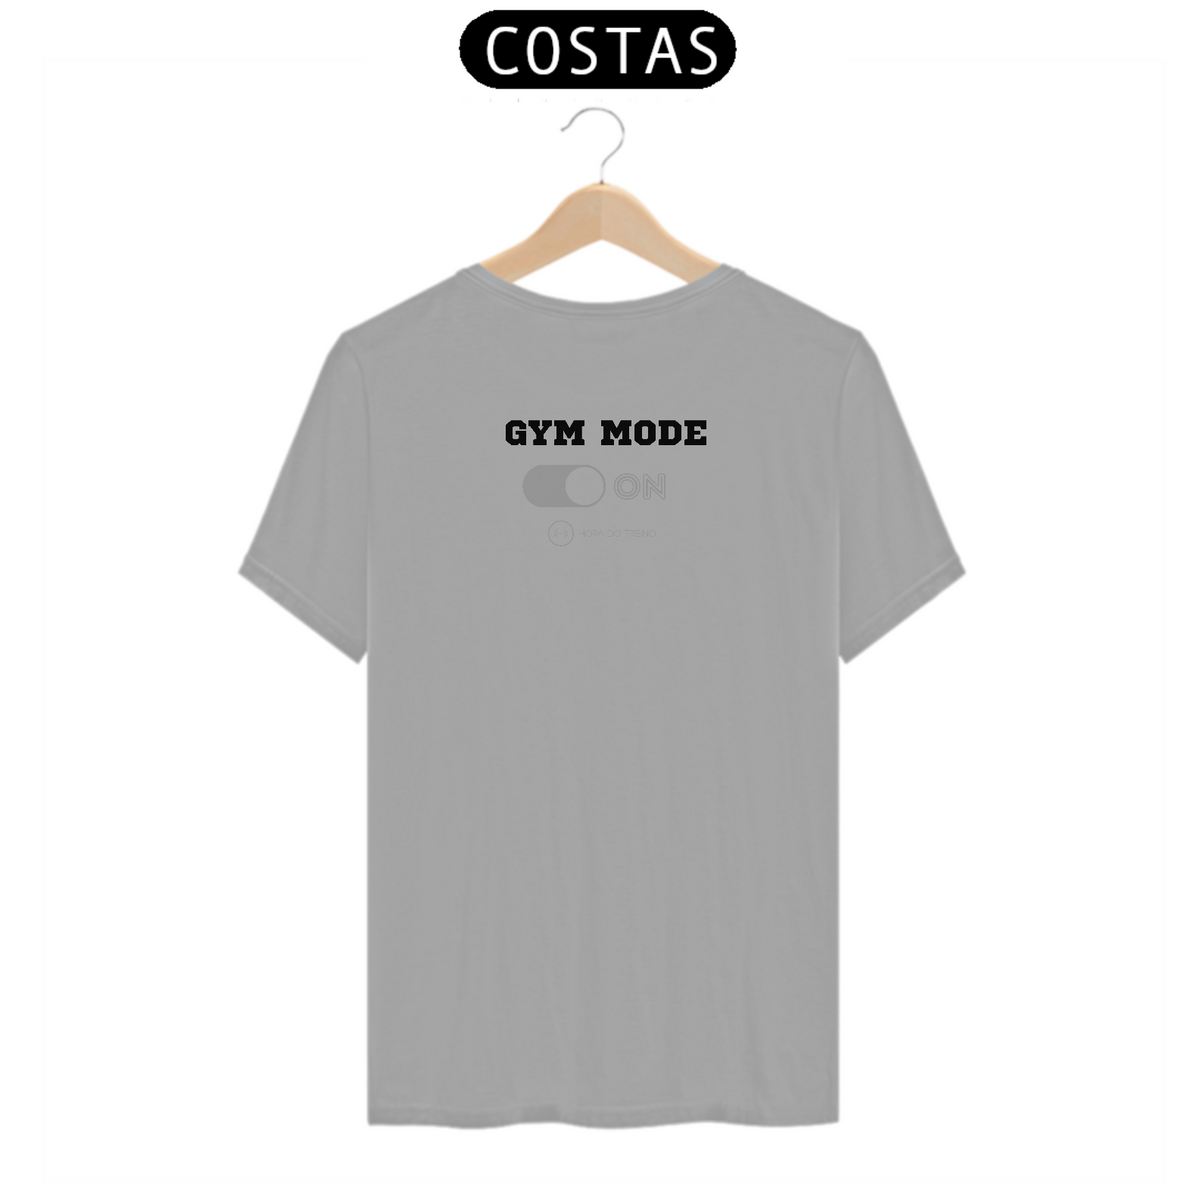 Nome do produto: Camiseta Unissex Magic Gym Mode